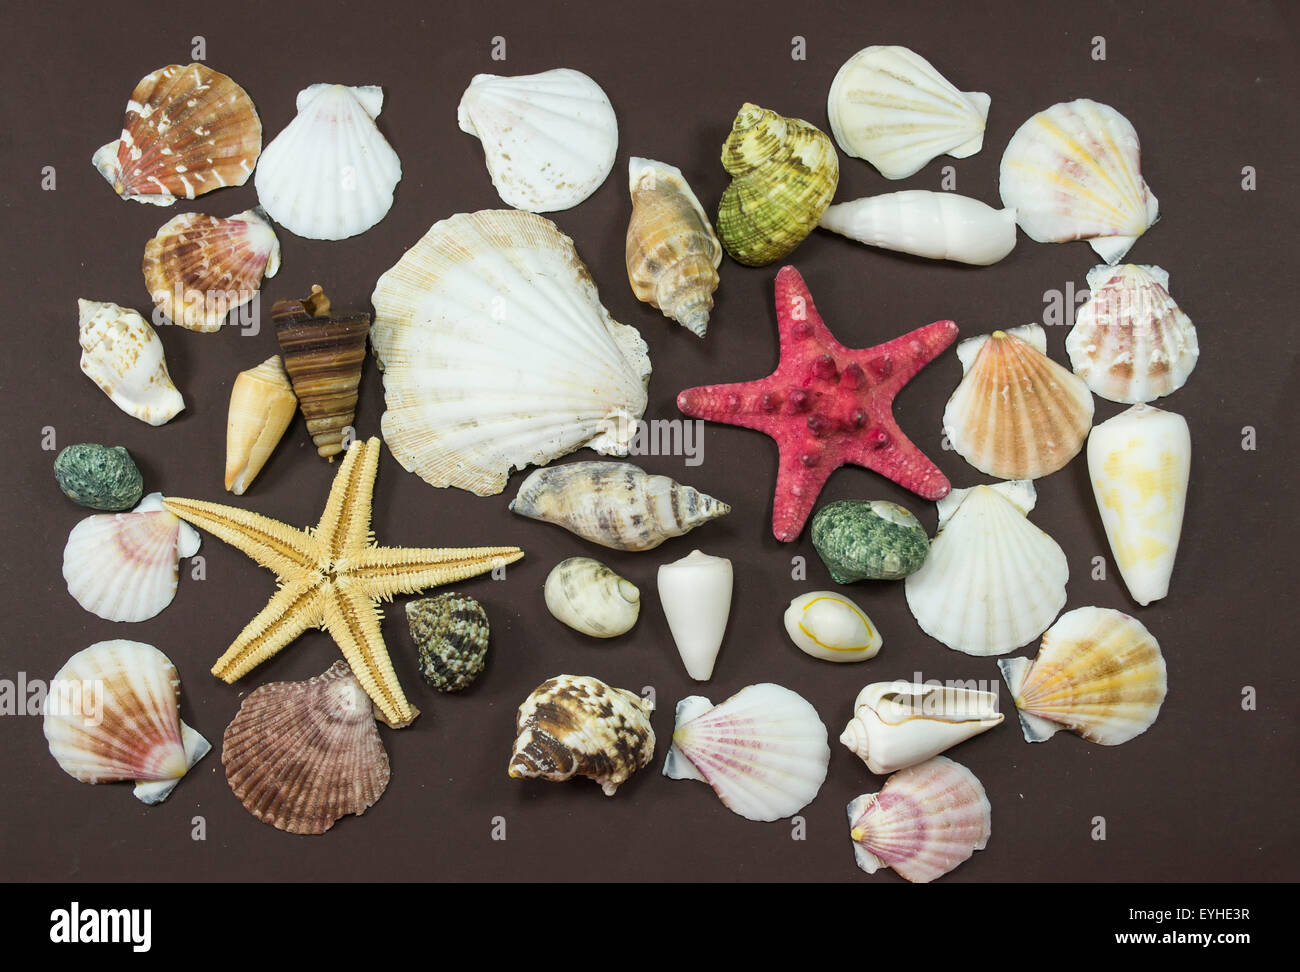 Coquilles de différentes créatures marines fossilisées et deux étoiles de mer jaune et rouge , contre un fond brun Banque D'Images